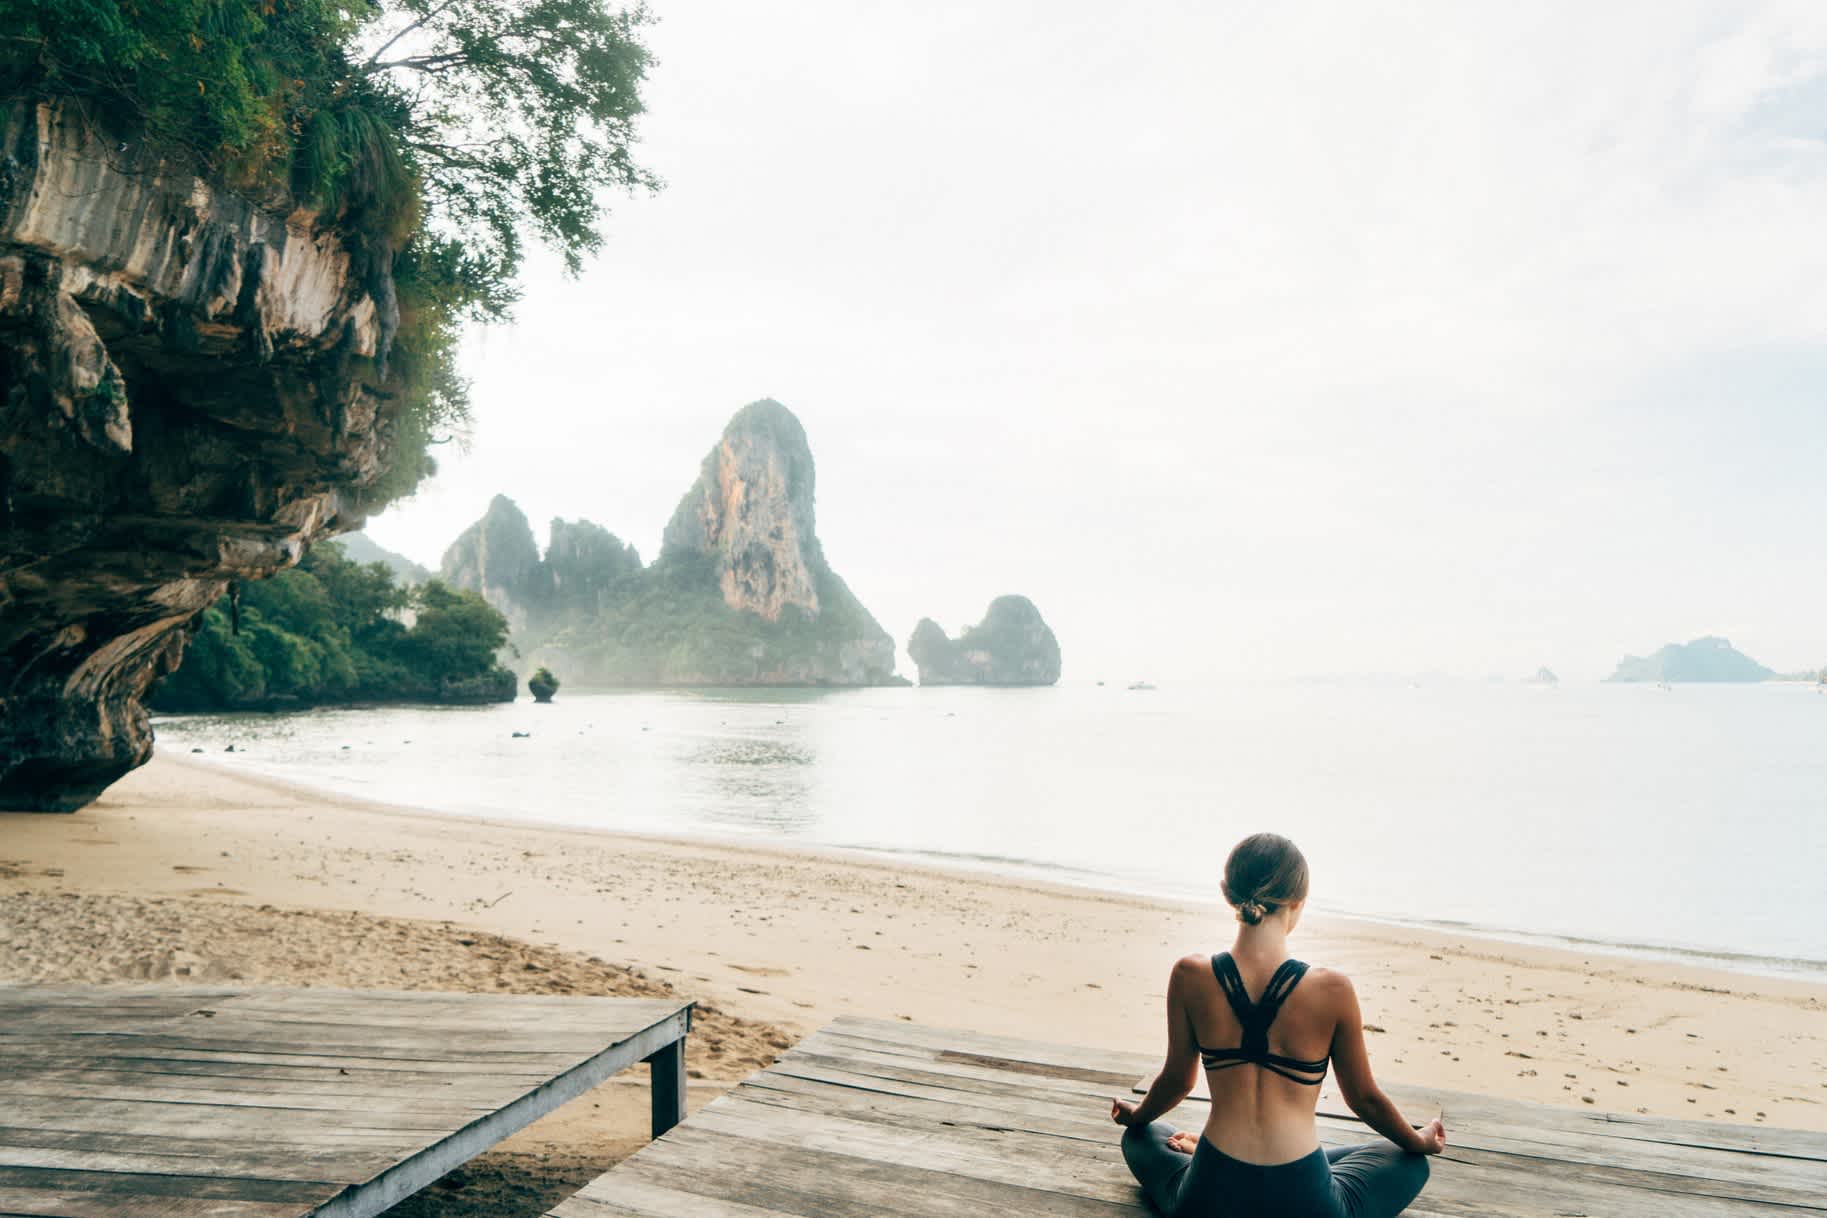 Frau tun Yoga am Strand in Thailand

